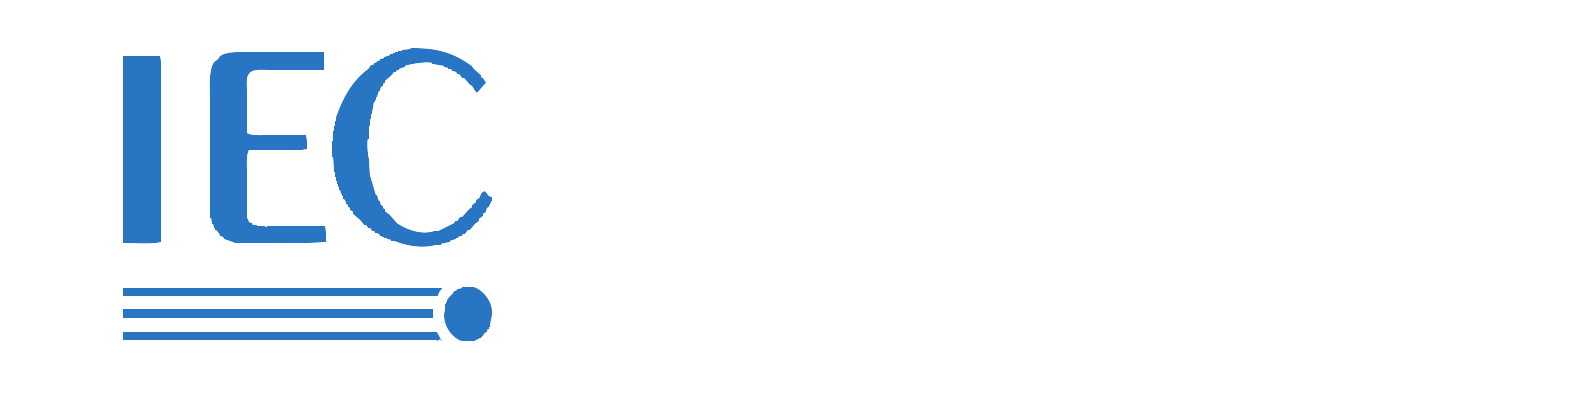 IEC 62196-2การชาร์จ EV